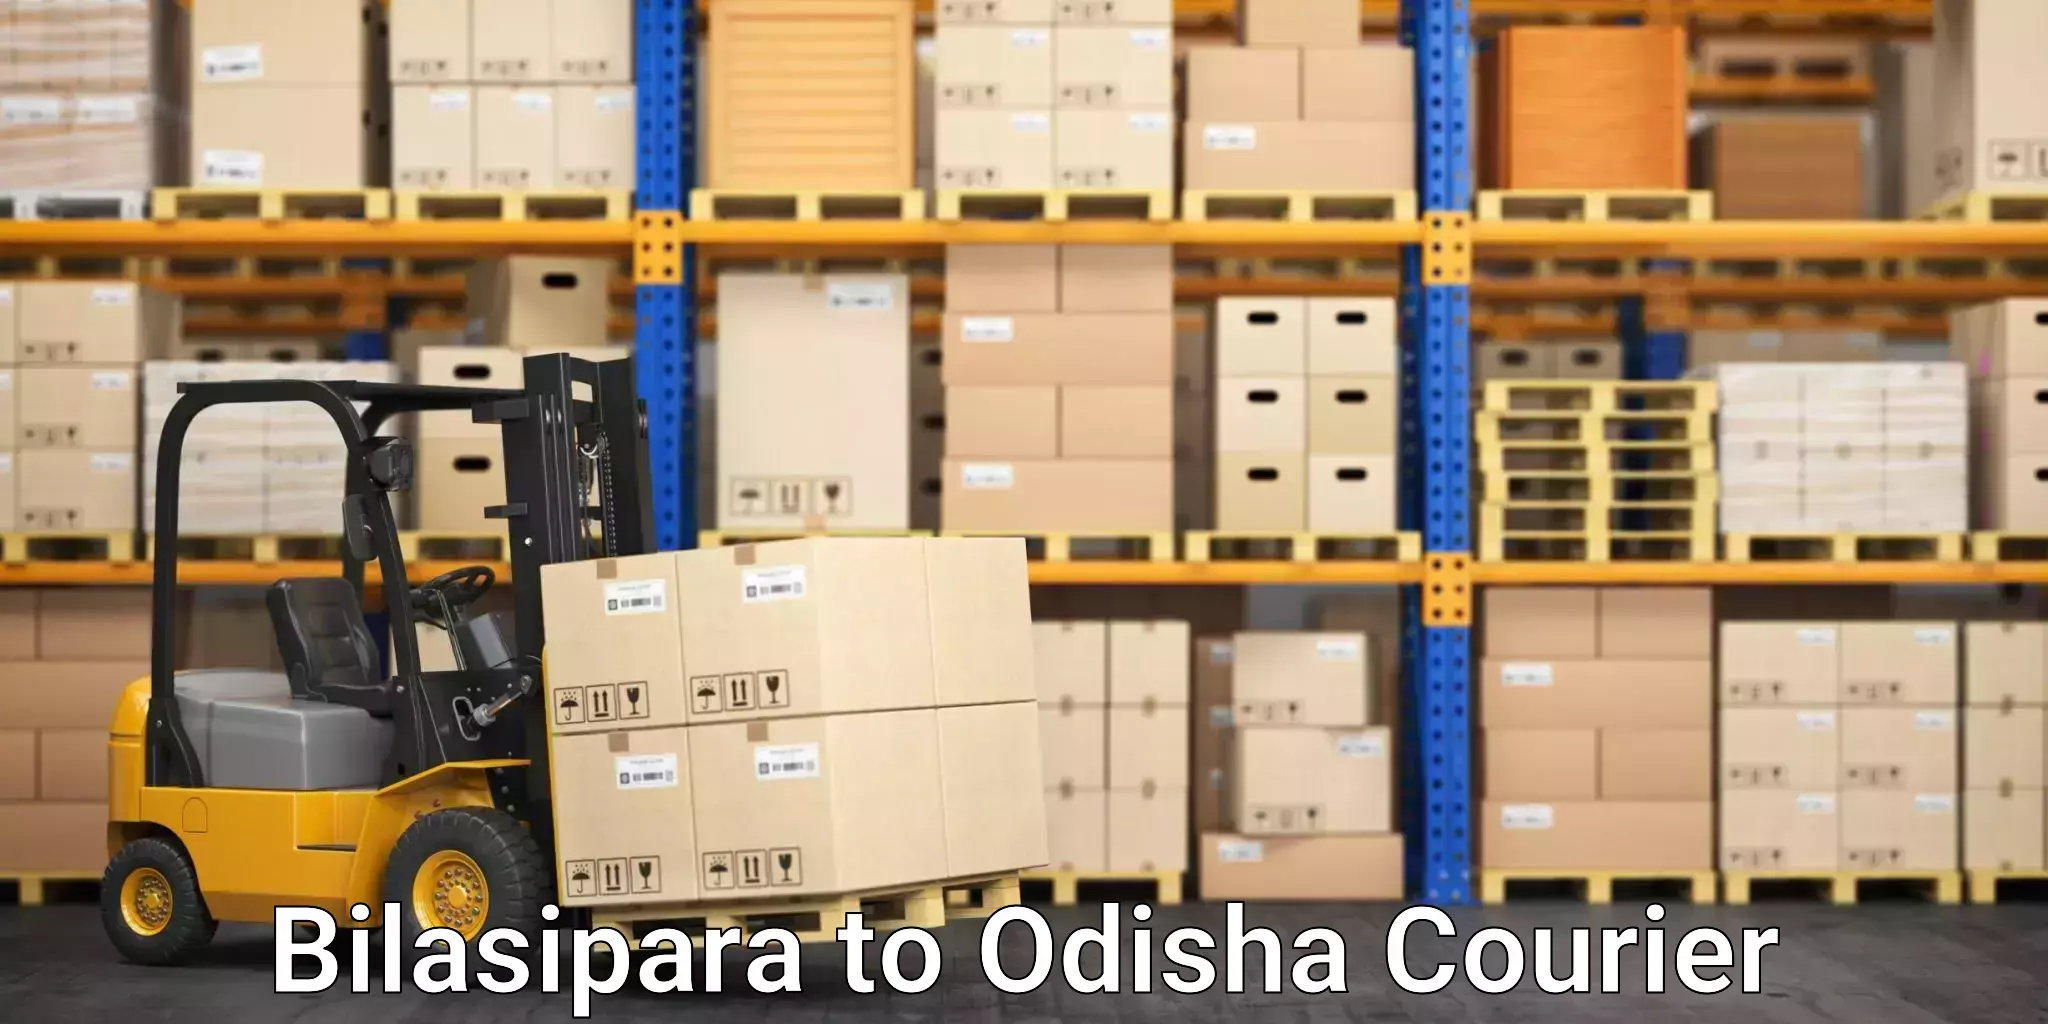 Expedited shipping solutions Bilasipara to Balimela